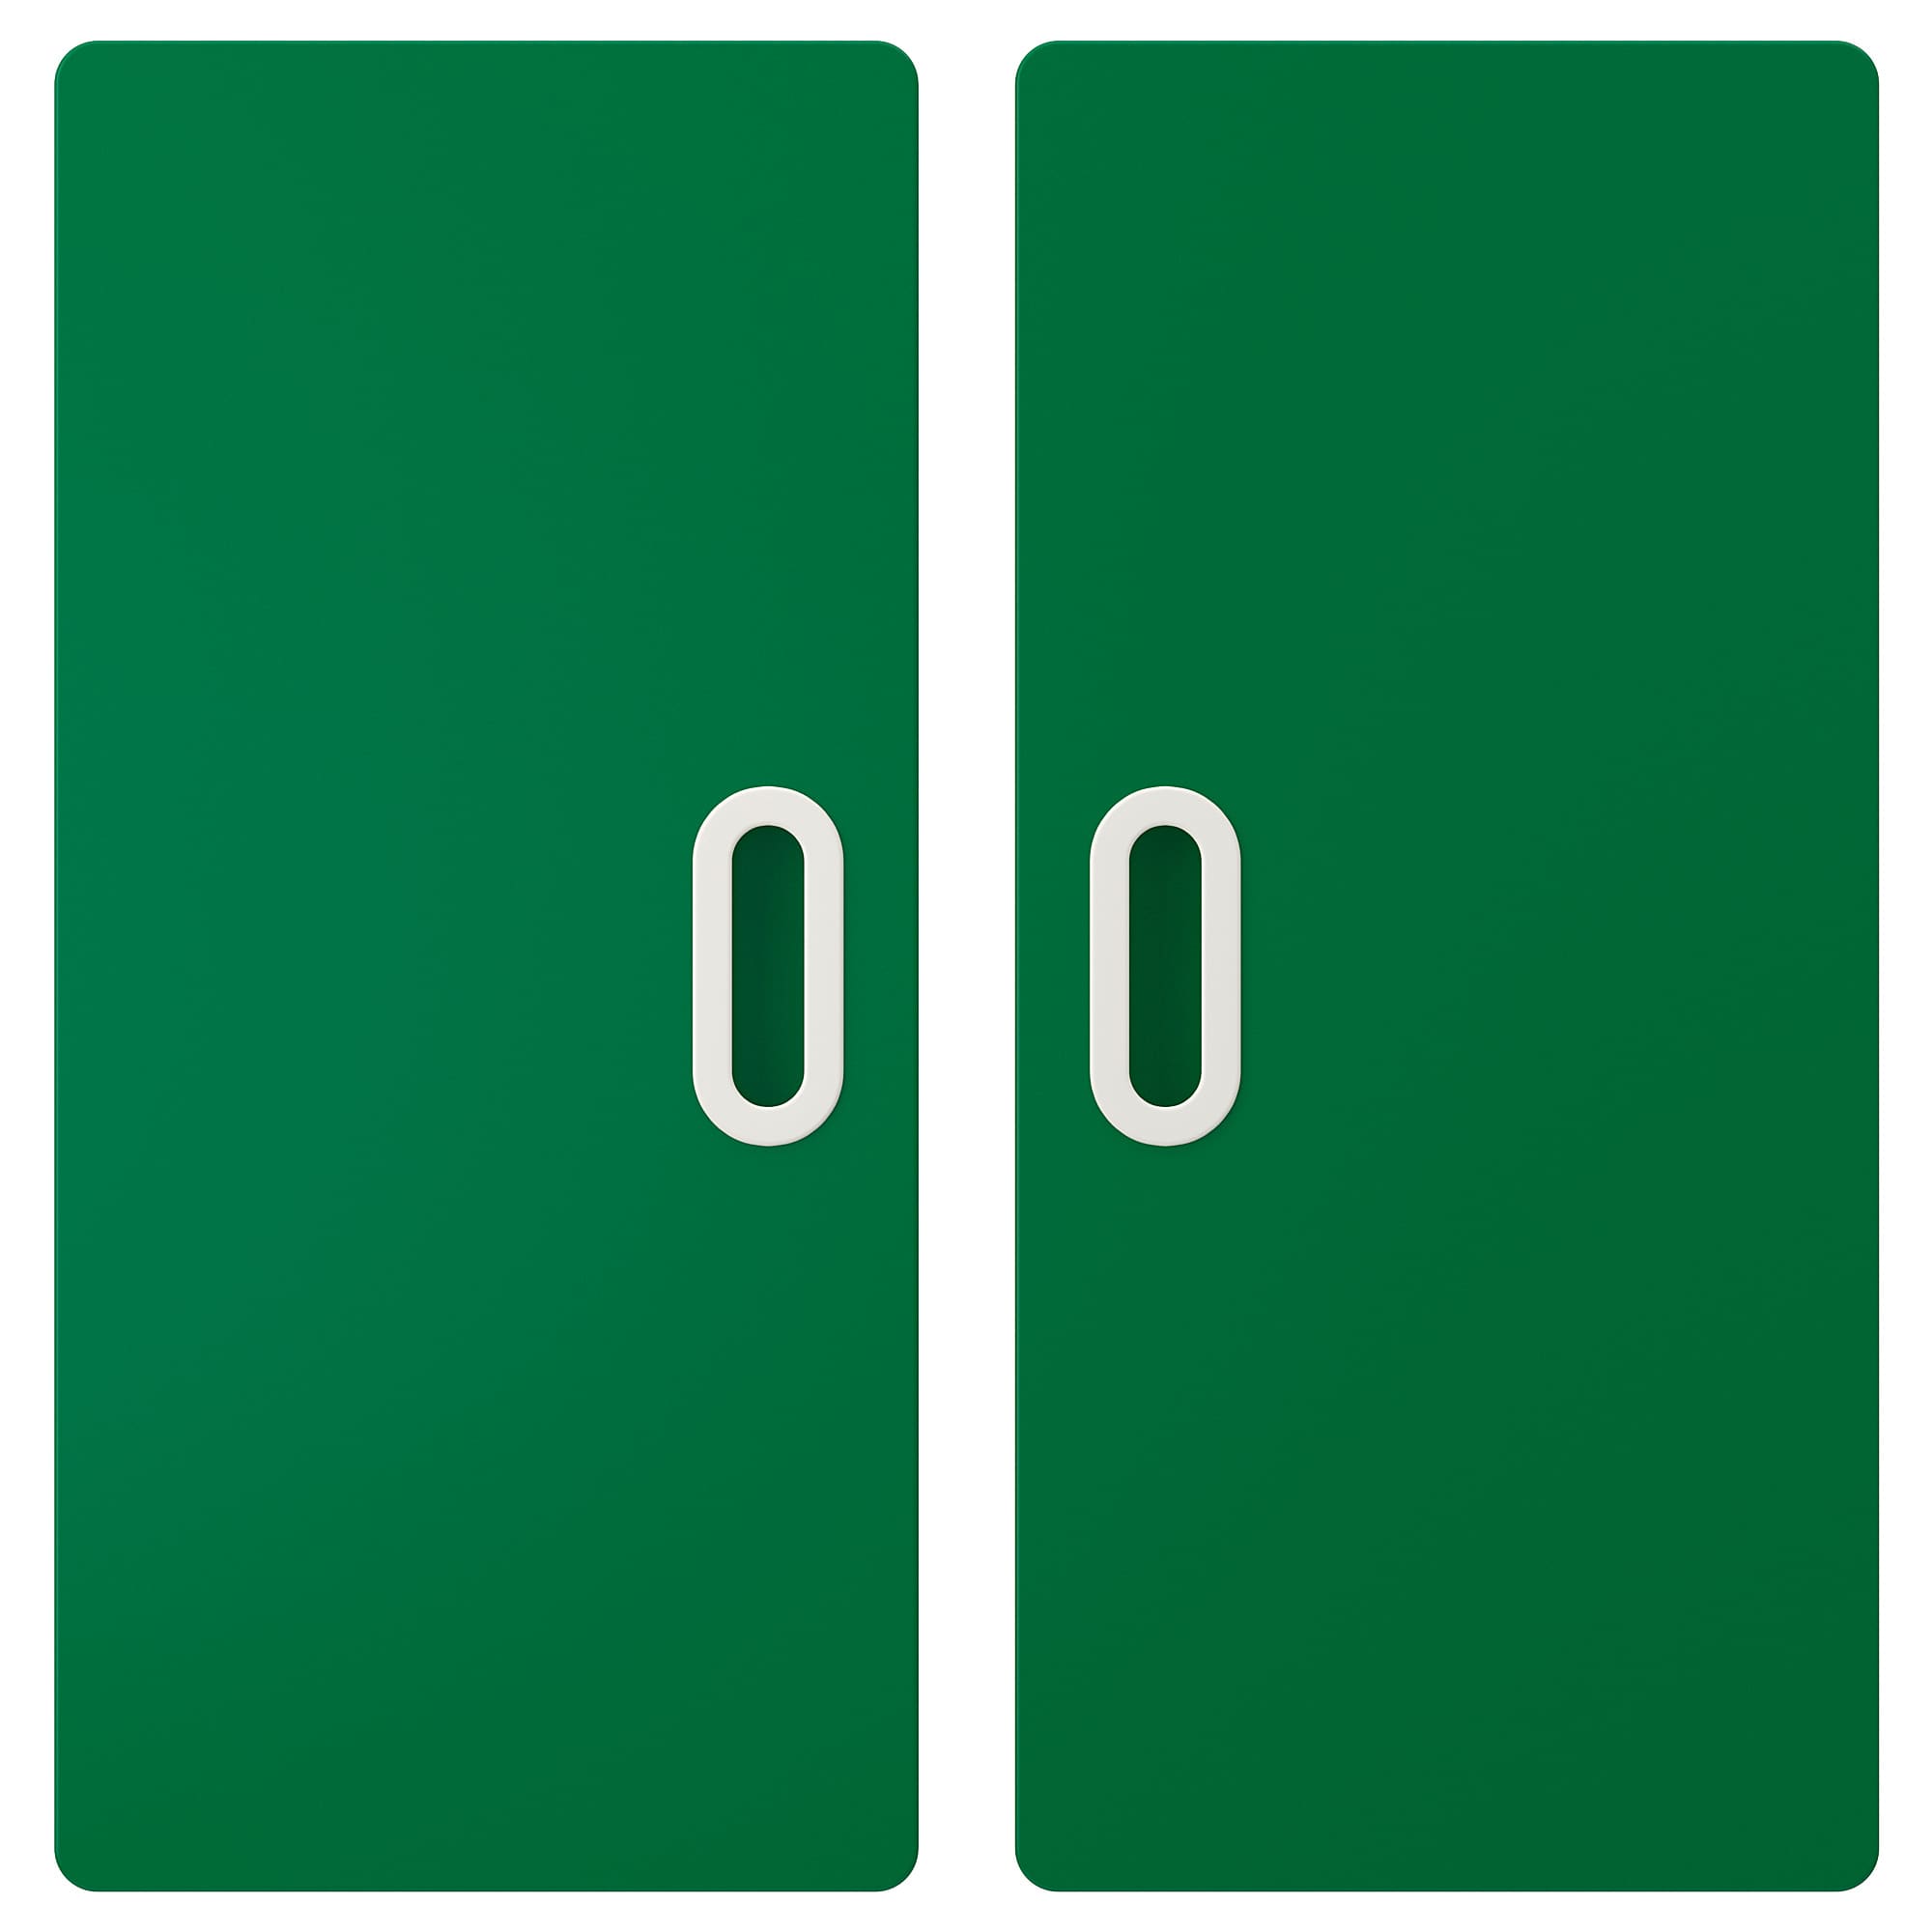 Зеленый 60 градусов. Двери икеа зеленый. Икеа СТУВА ФРИТИДС. Размер дверей ФРИТИДС. Икеа зеленые с дырочками.